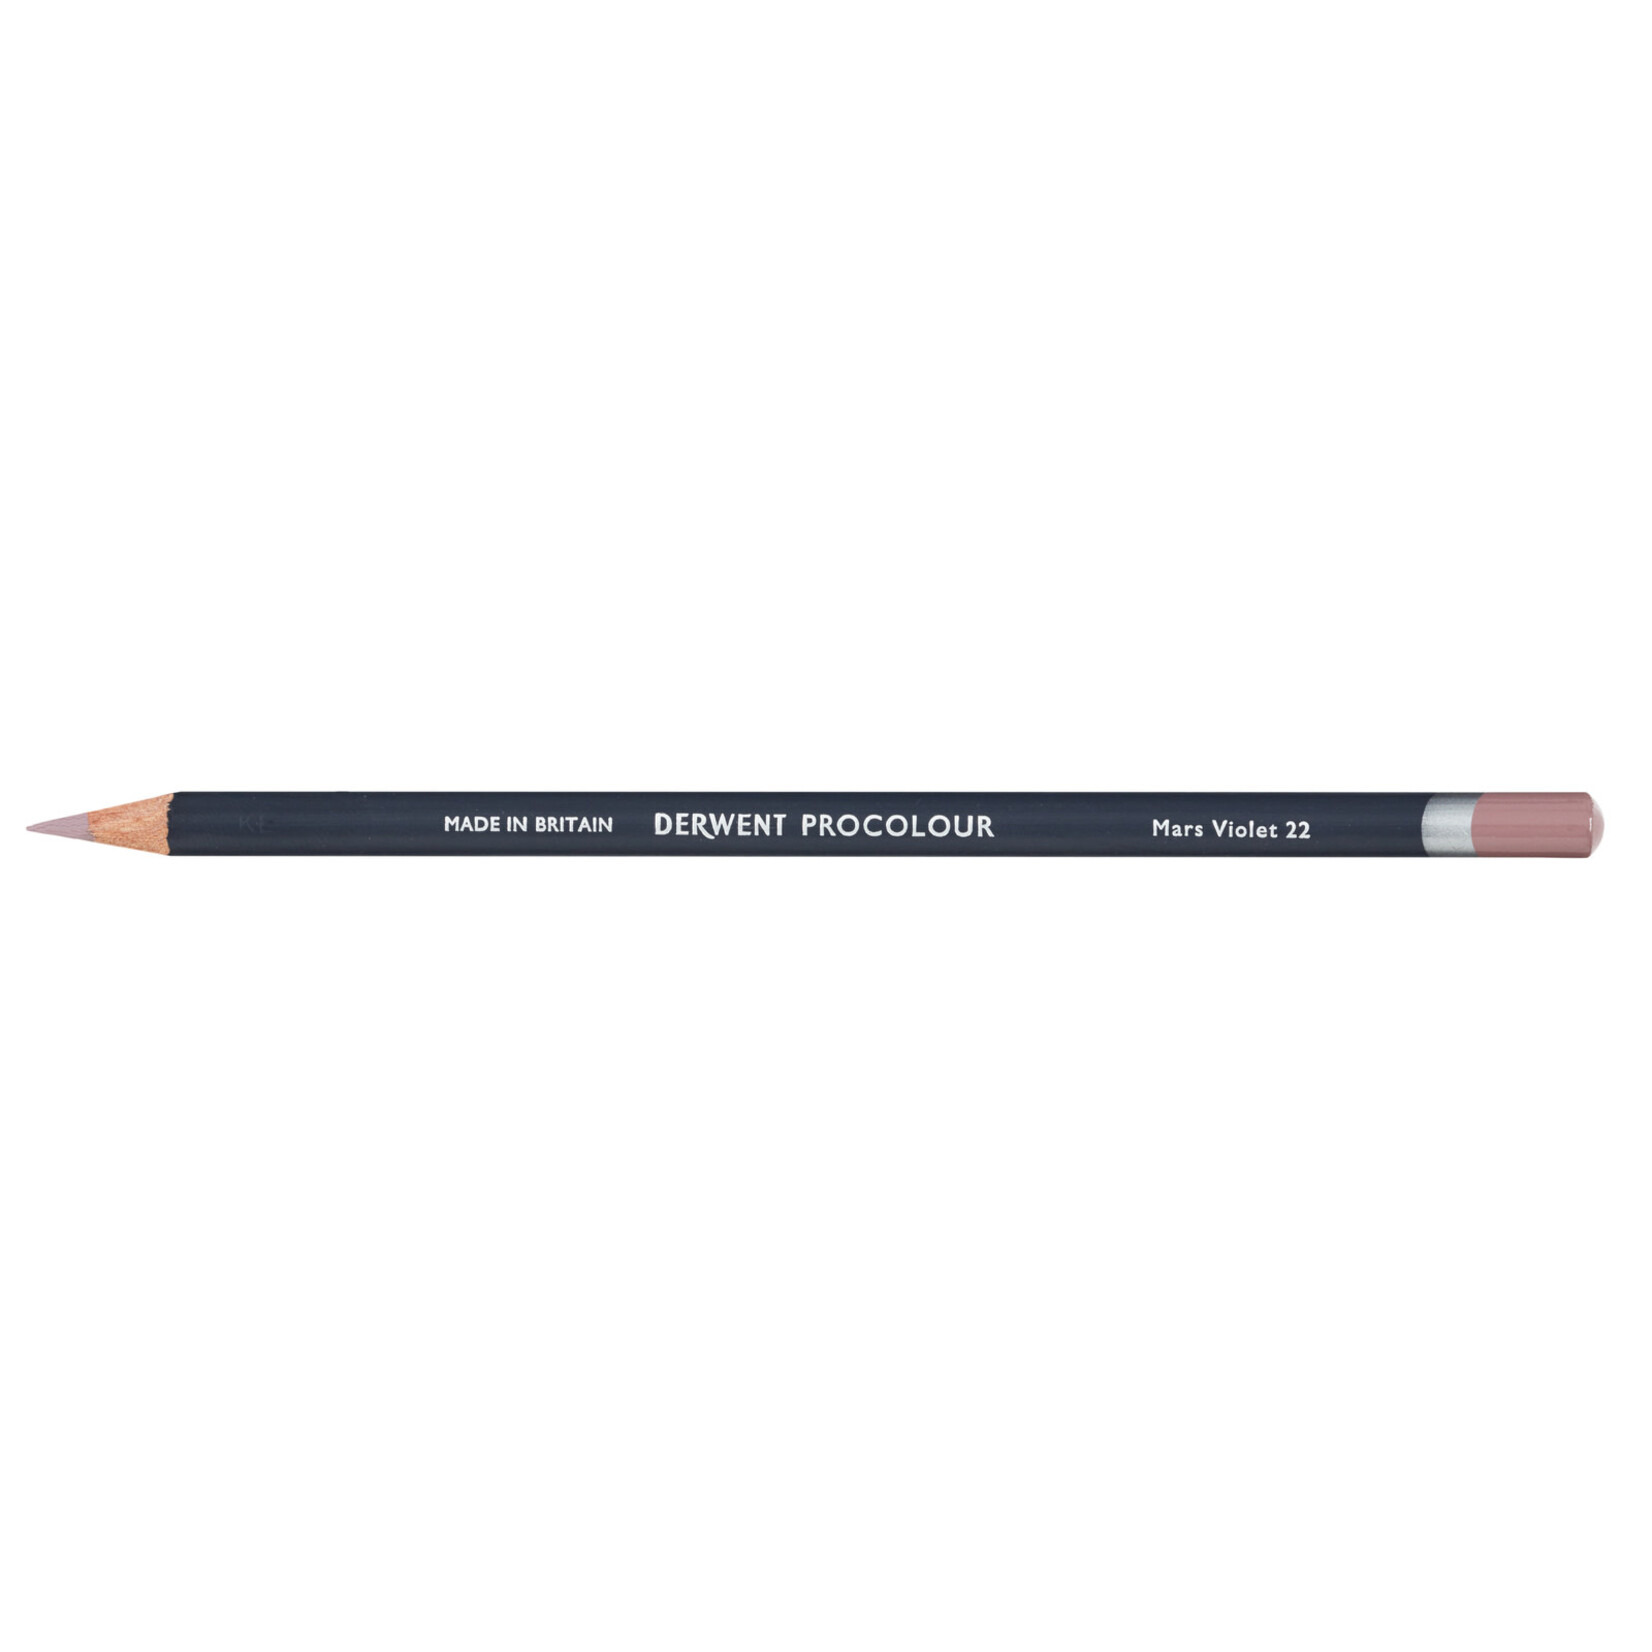 Derwent Procolour Pencil Mars Violent